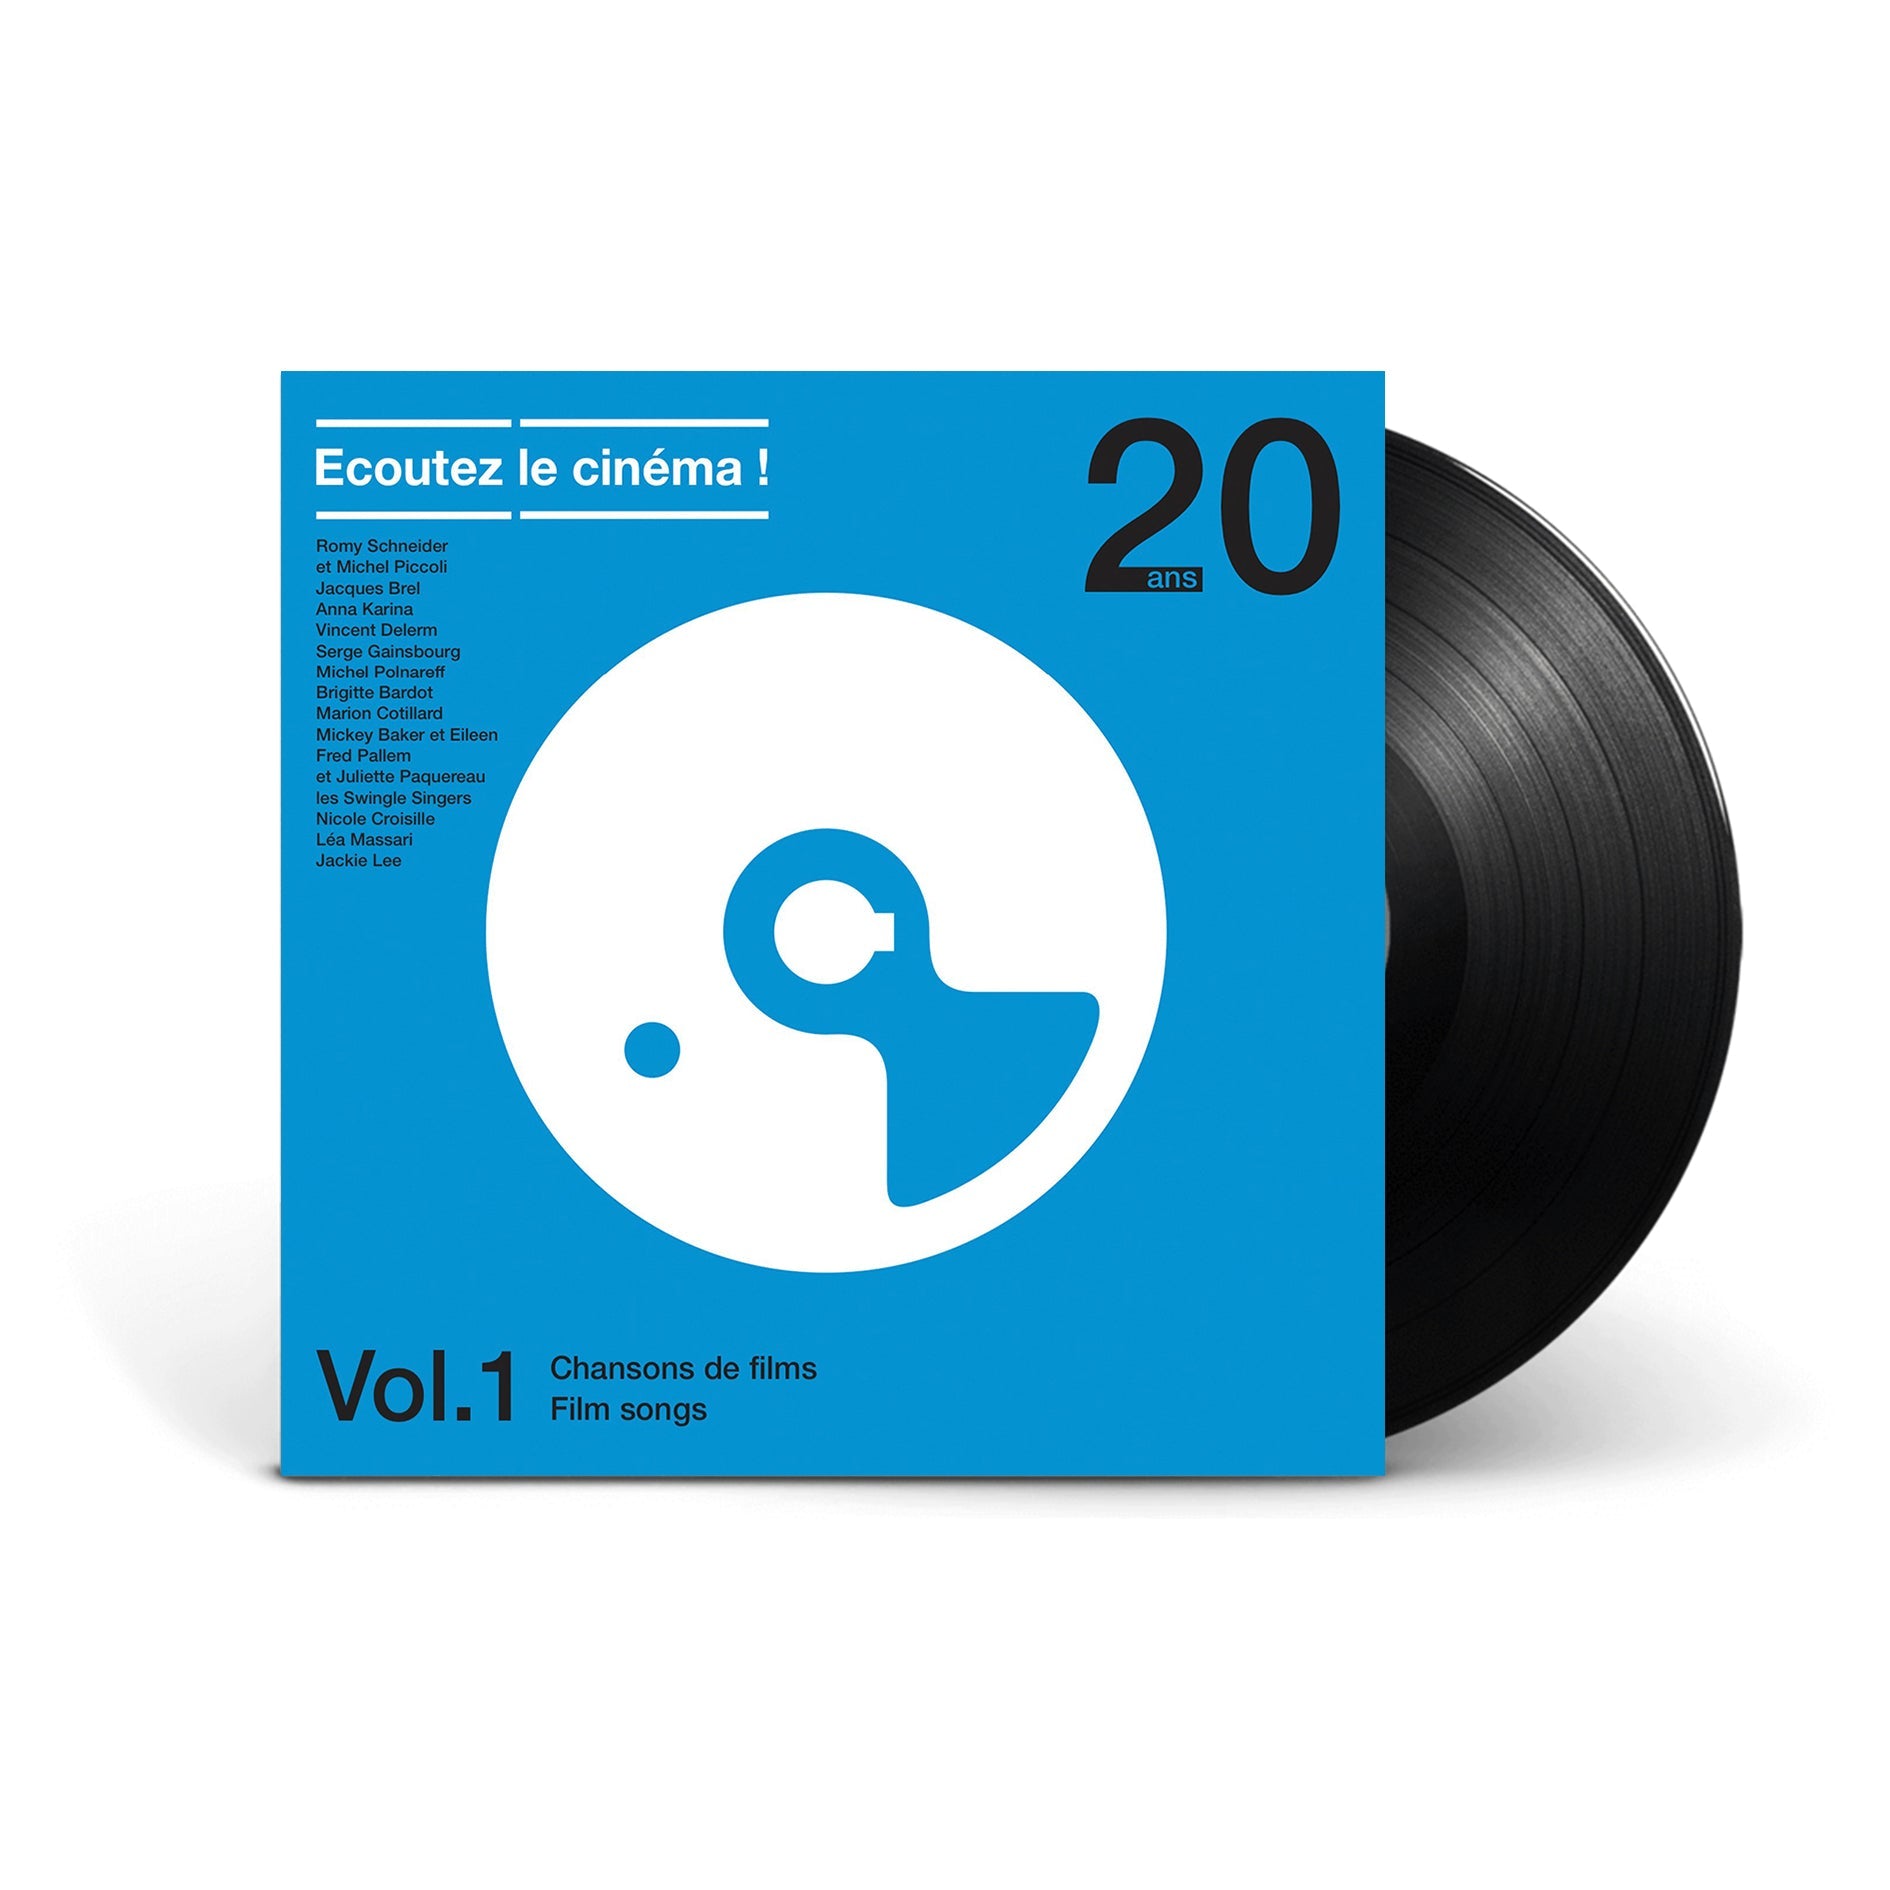 Ecoutez le cinéma ! 20 ans Vol. 1 - Chansons de films - Vinyle –  VinylCollector Official FR